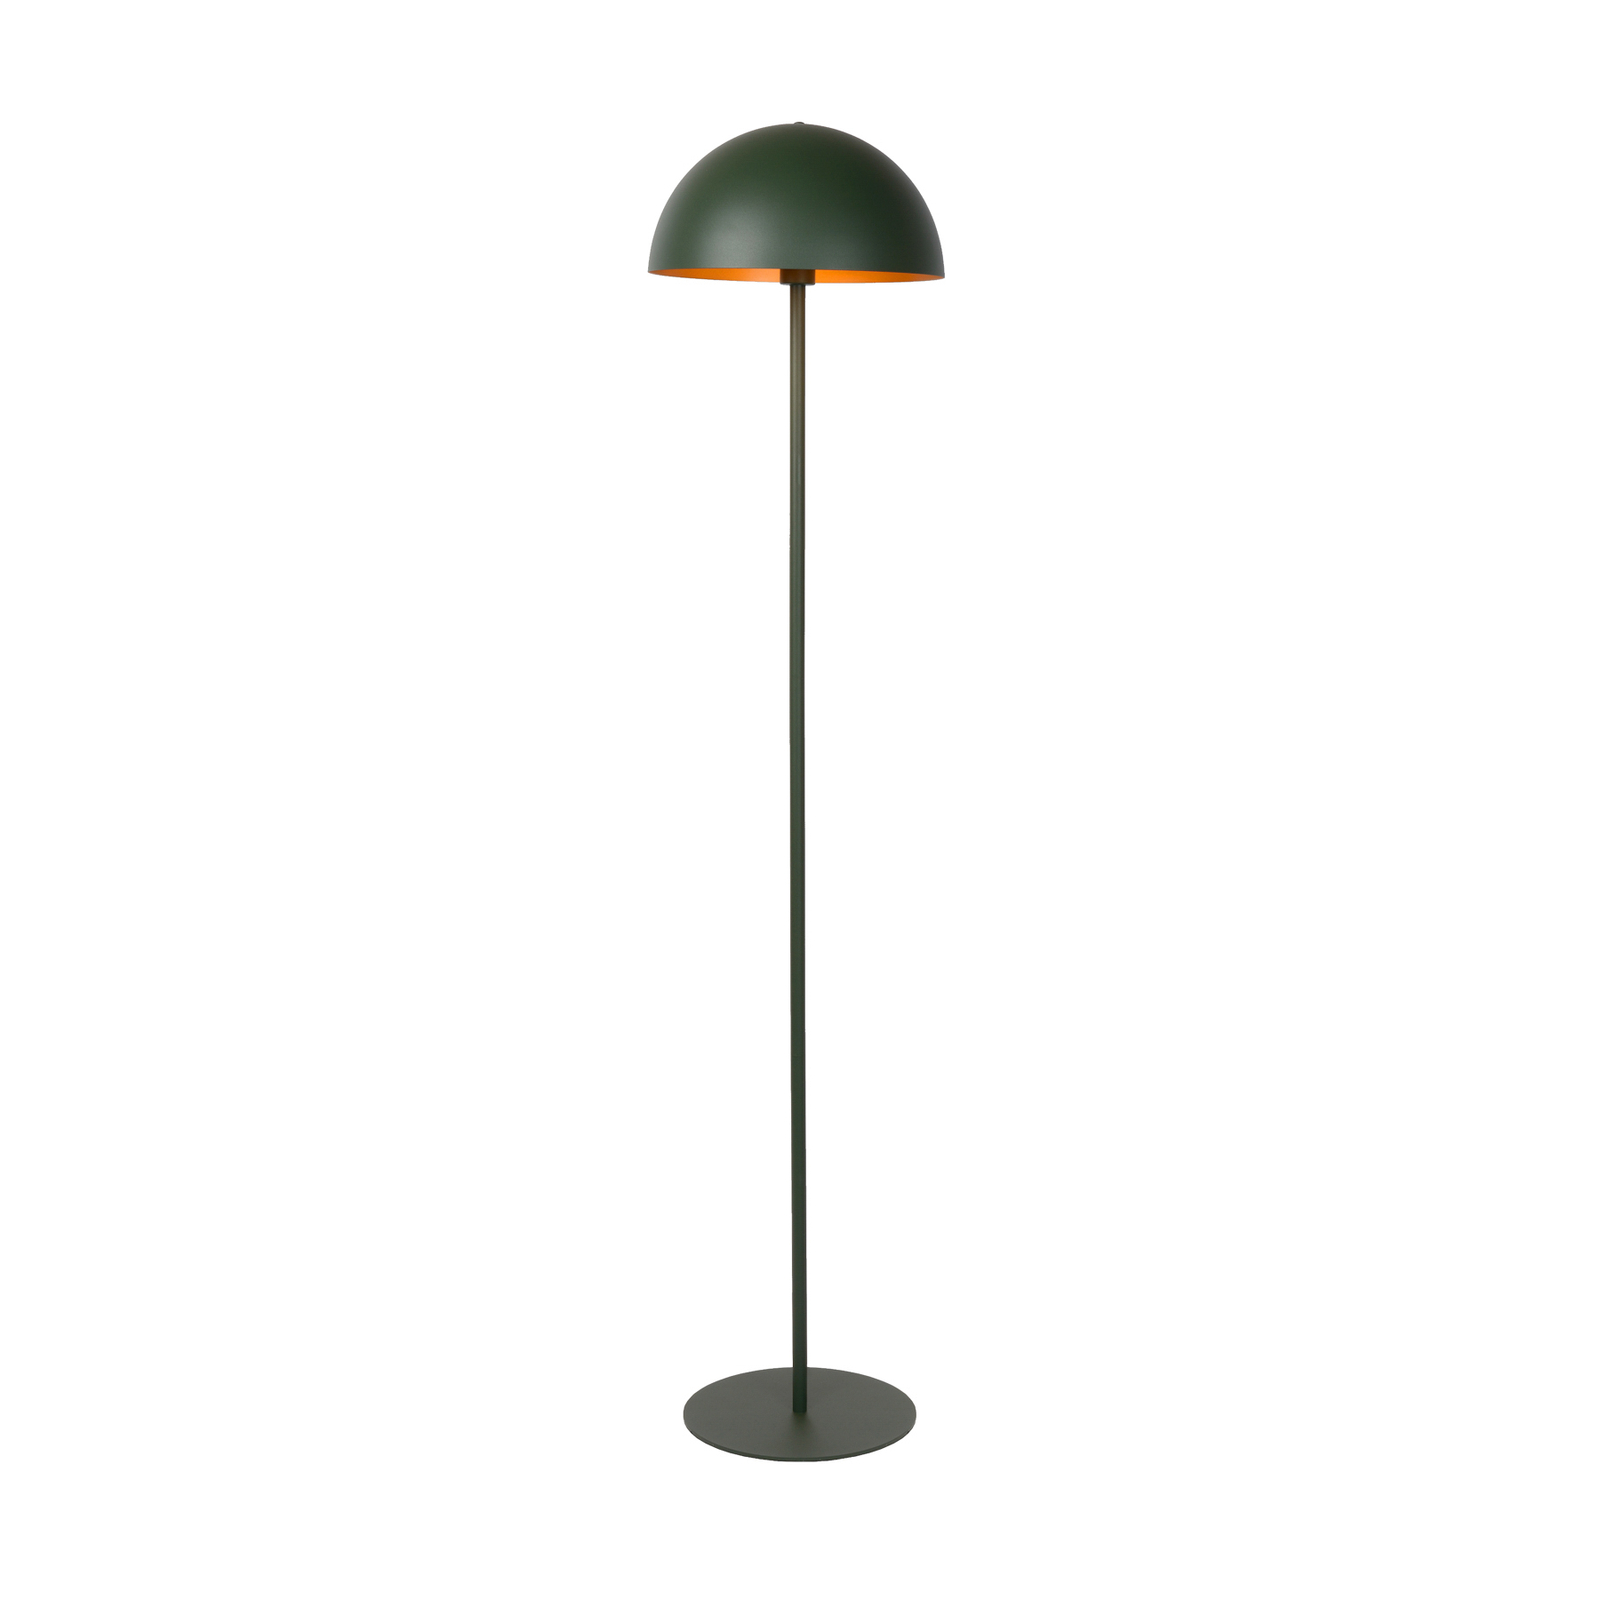 Vloerlamp Siemon van staal, Ø 35 cm, groen